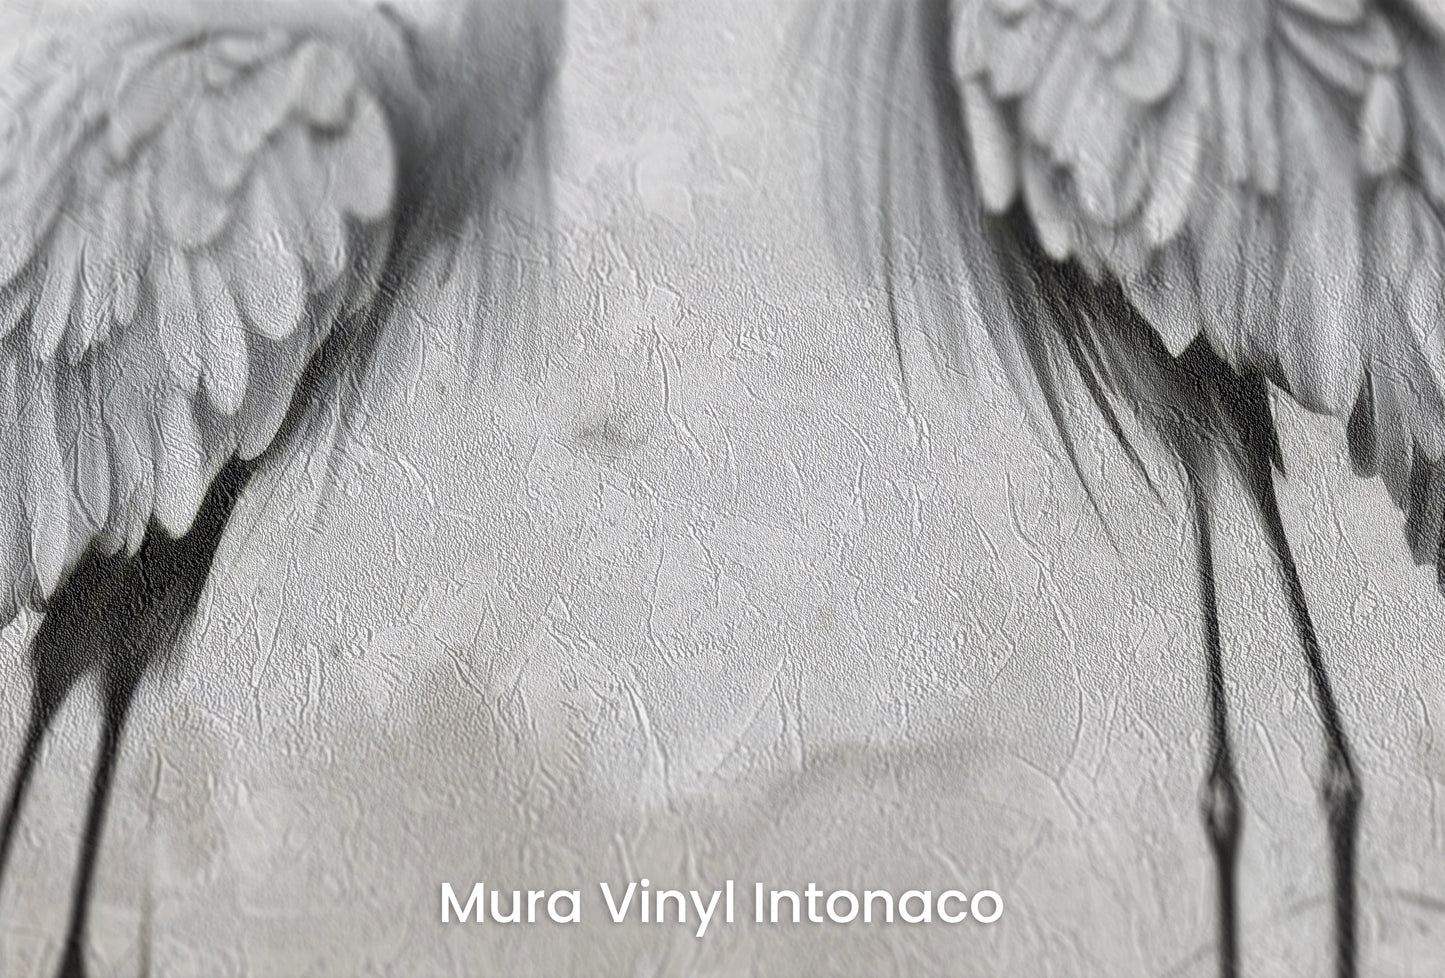 Zbliżenie na artystyczną fototapetę o nazwie Lunar Duo na podłożu Mura Vinyl Intonaco - struktura tartego tynku.